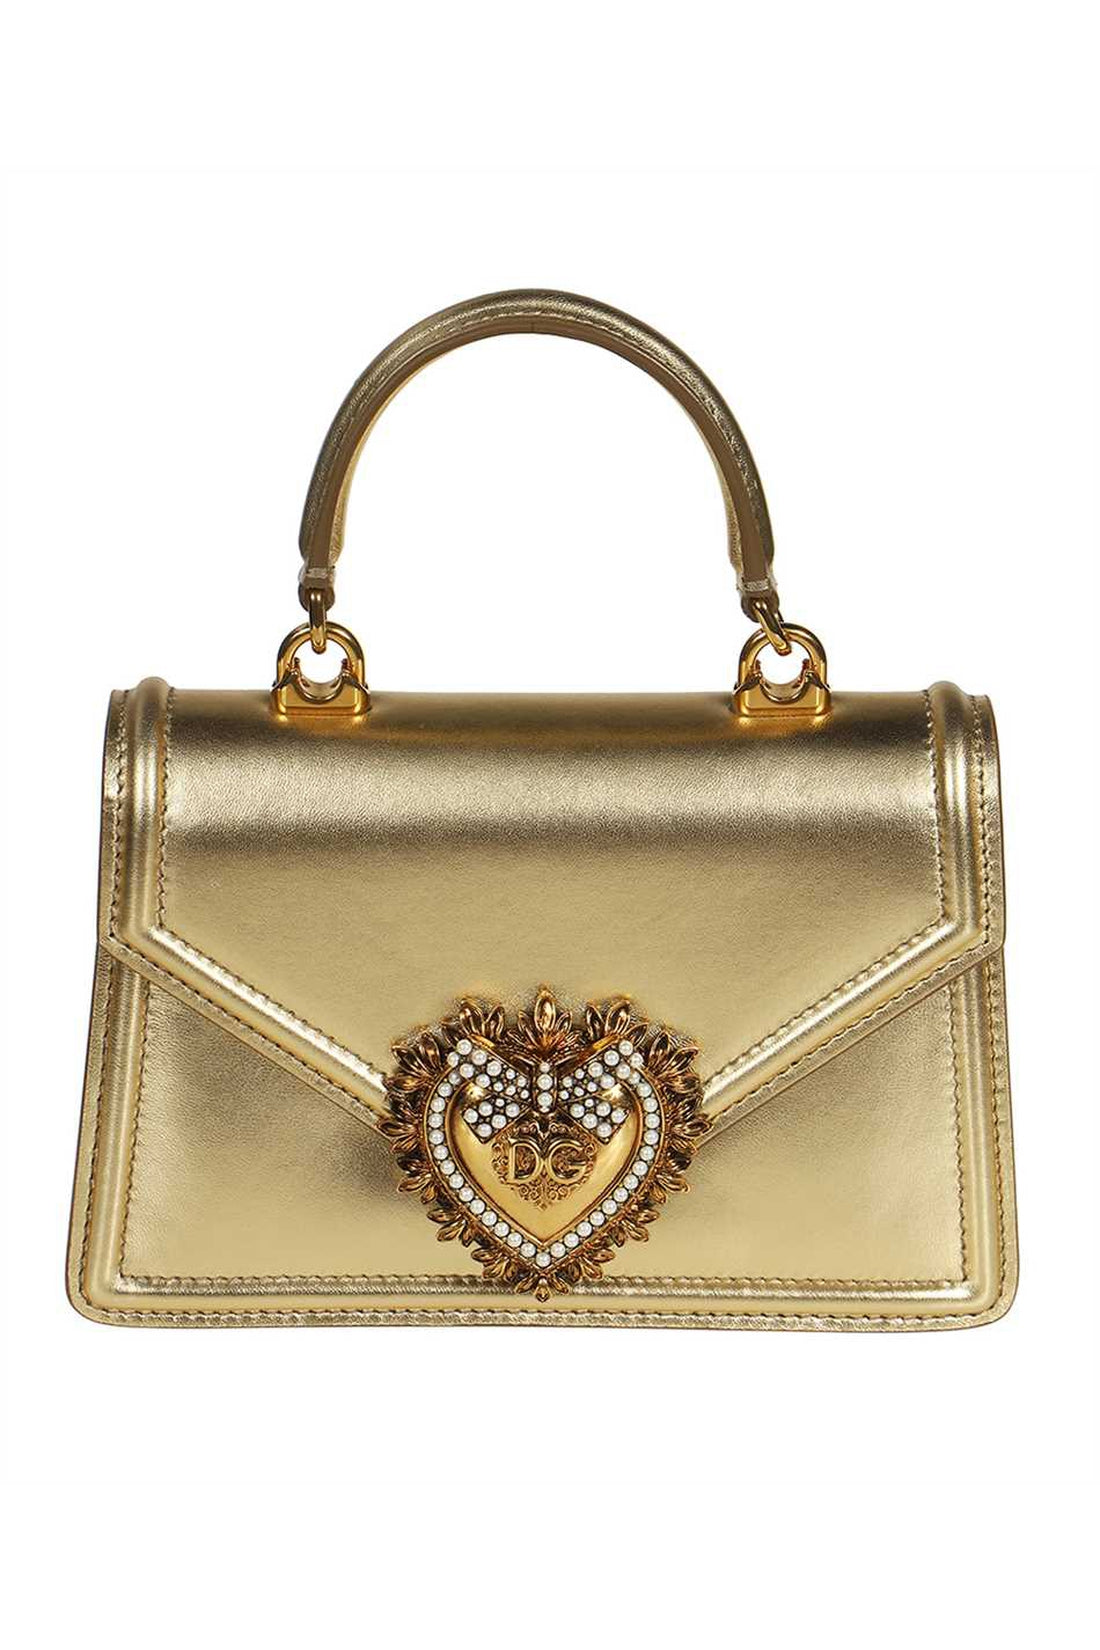 Dolce & Gabbana-OUTLET-SALE-Devotion leather mini-bag-ARCHIVIST